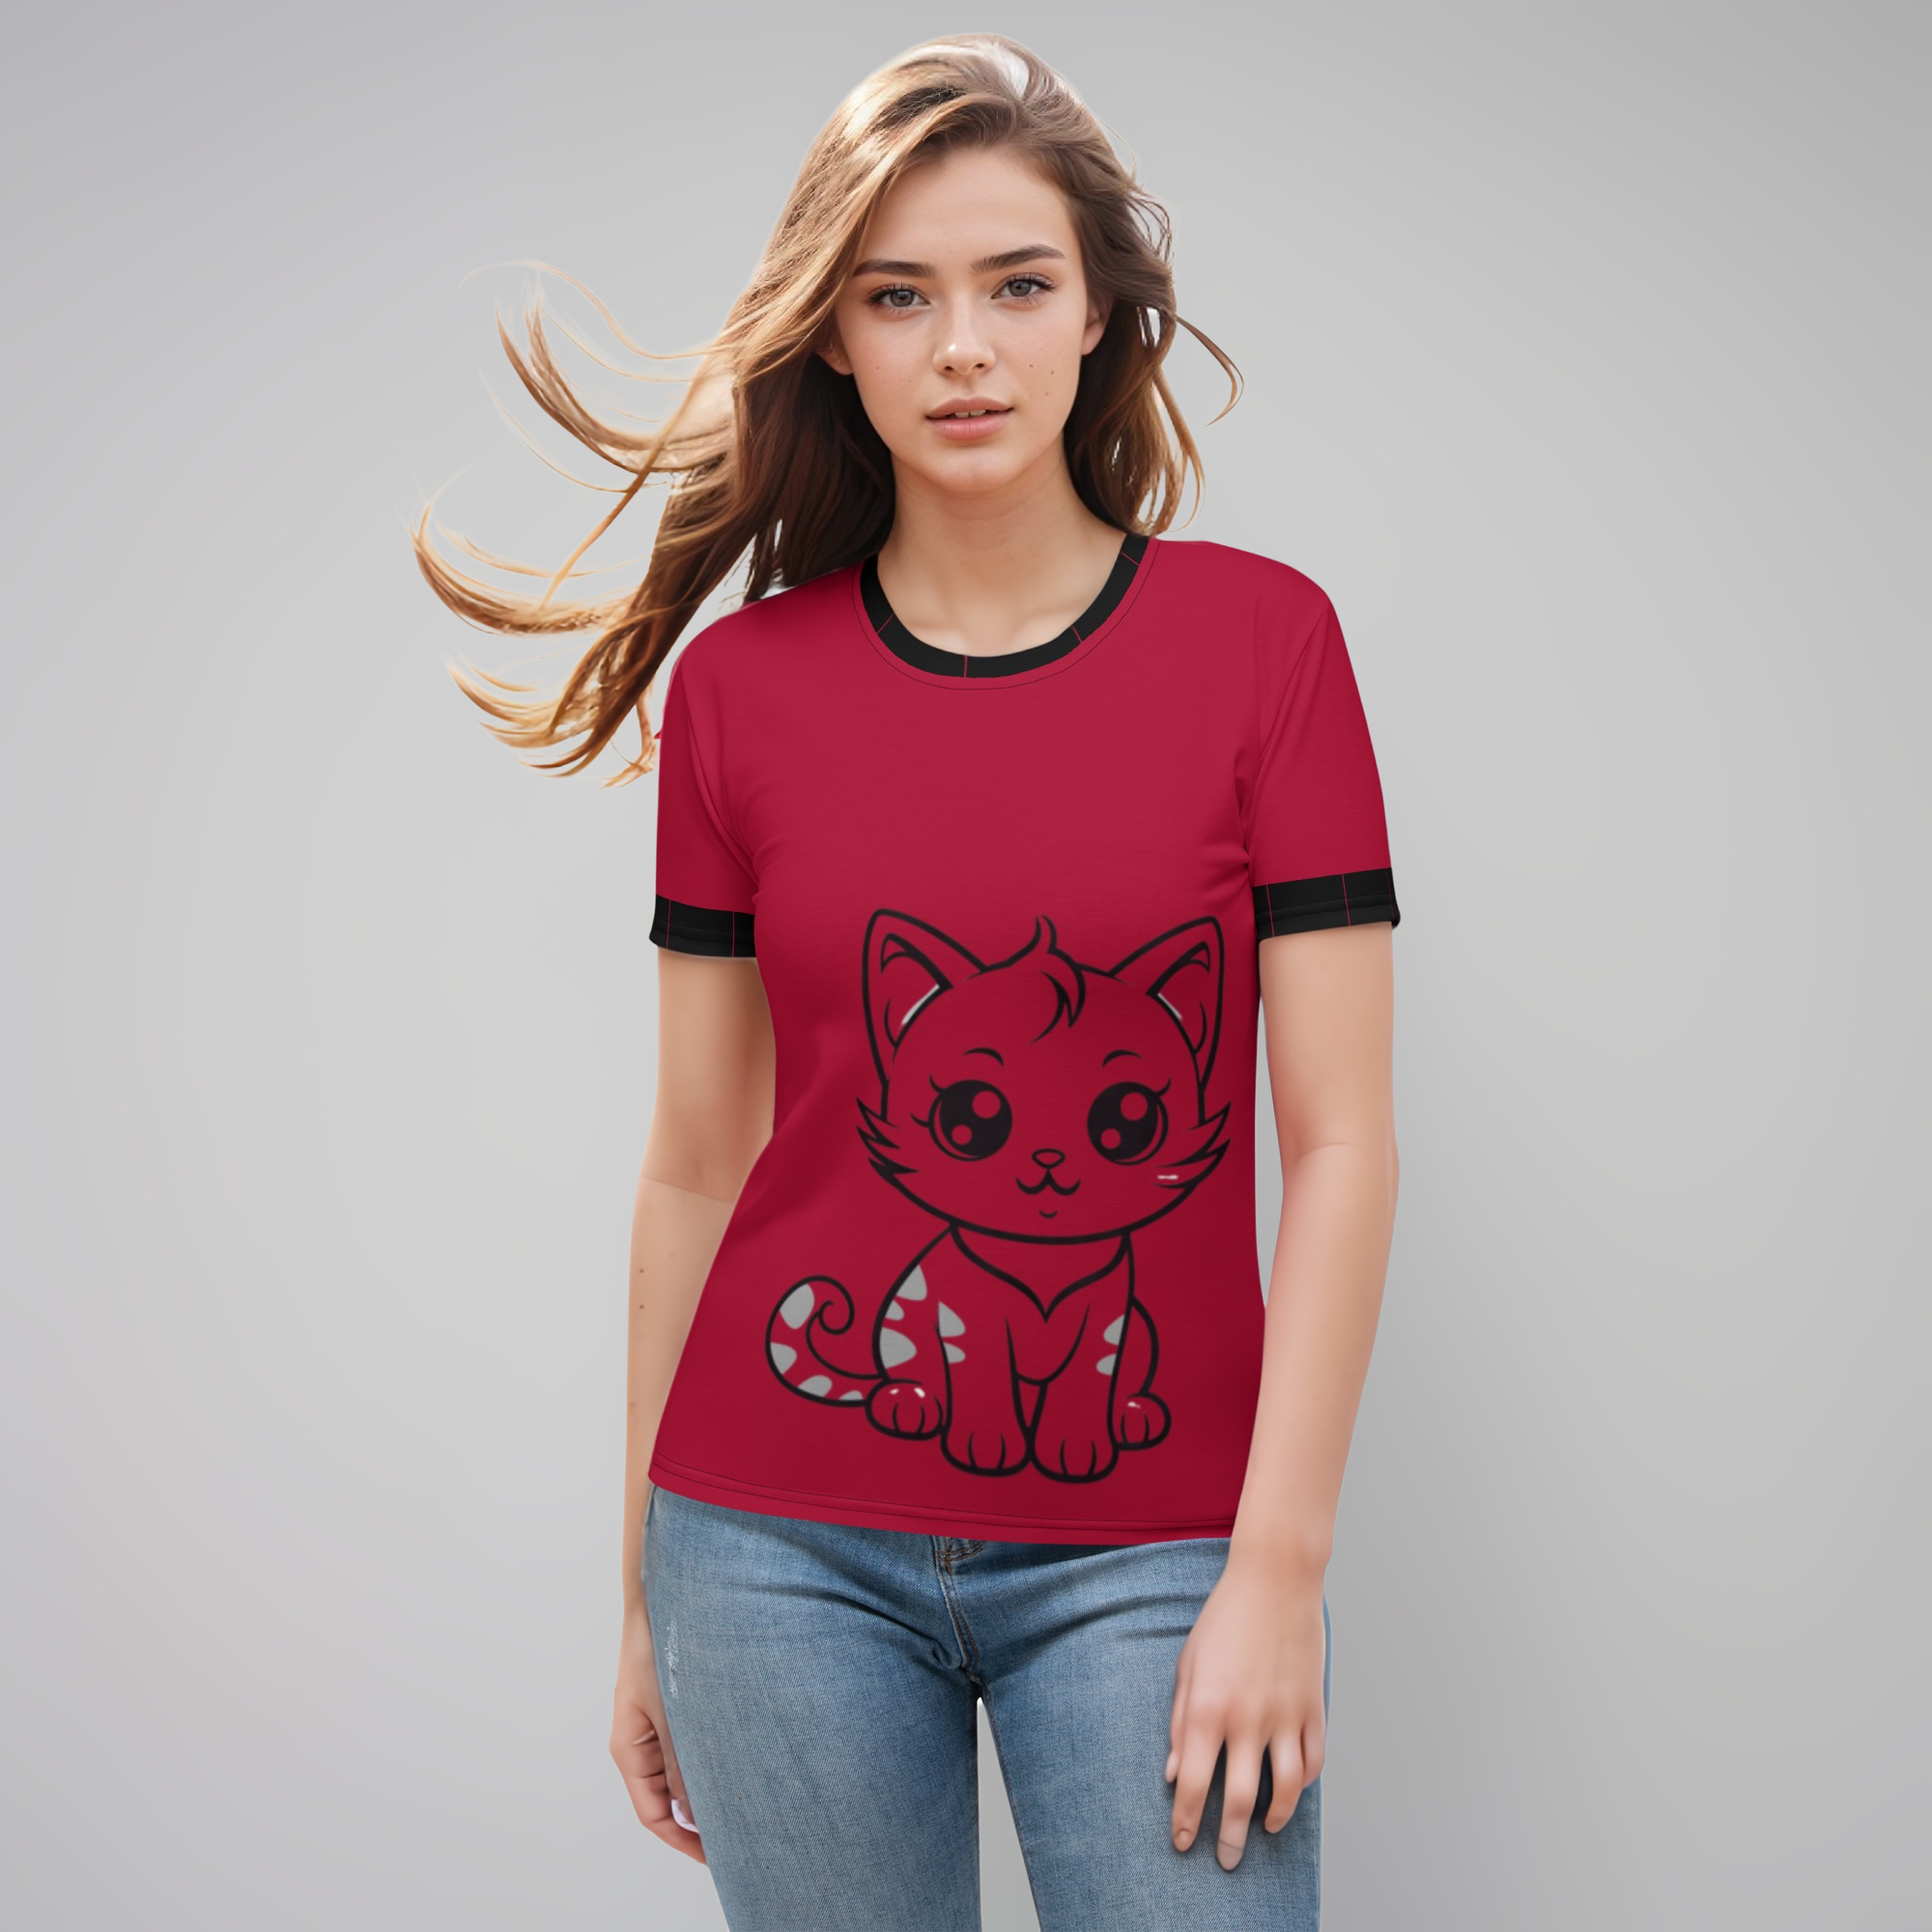 Premium Red Kitty Women's T-shirt